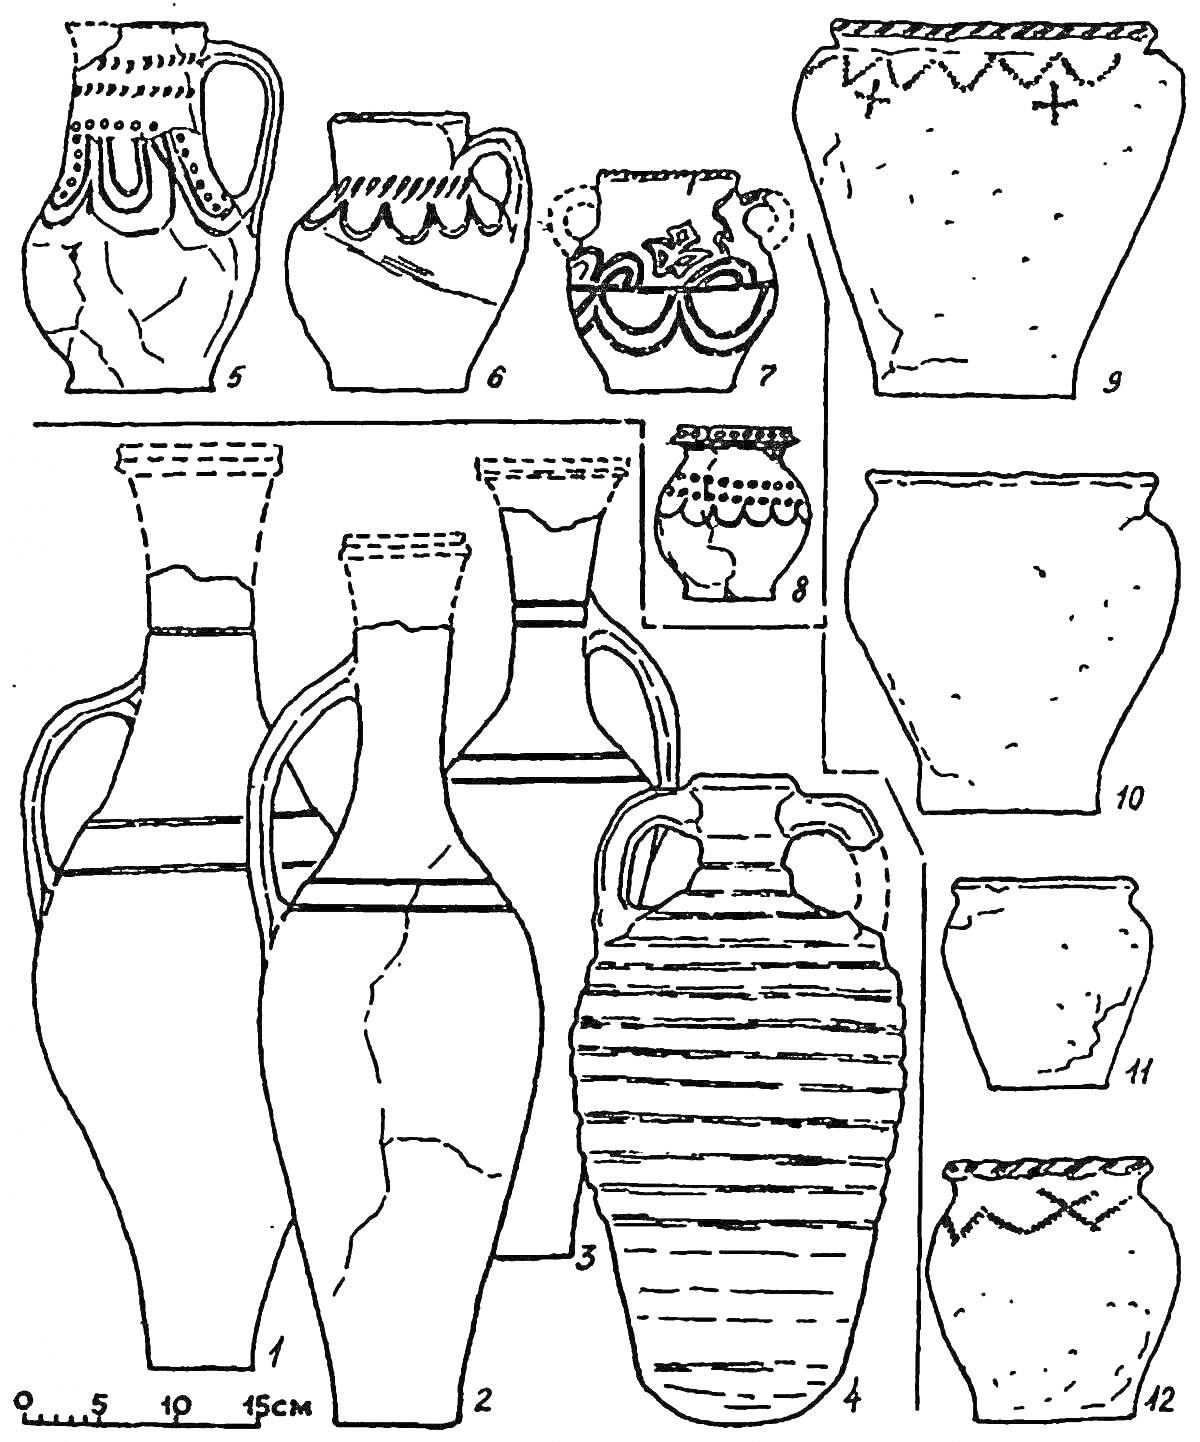 Раскраска Раскраска с изображением различных археологических сосудов, включая амфоры, кувшины и вазы с декоративными и простыми мотивами